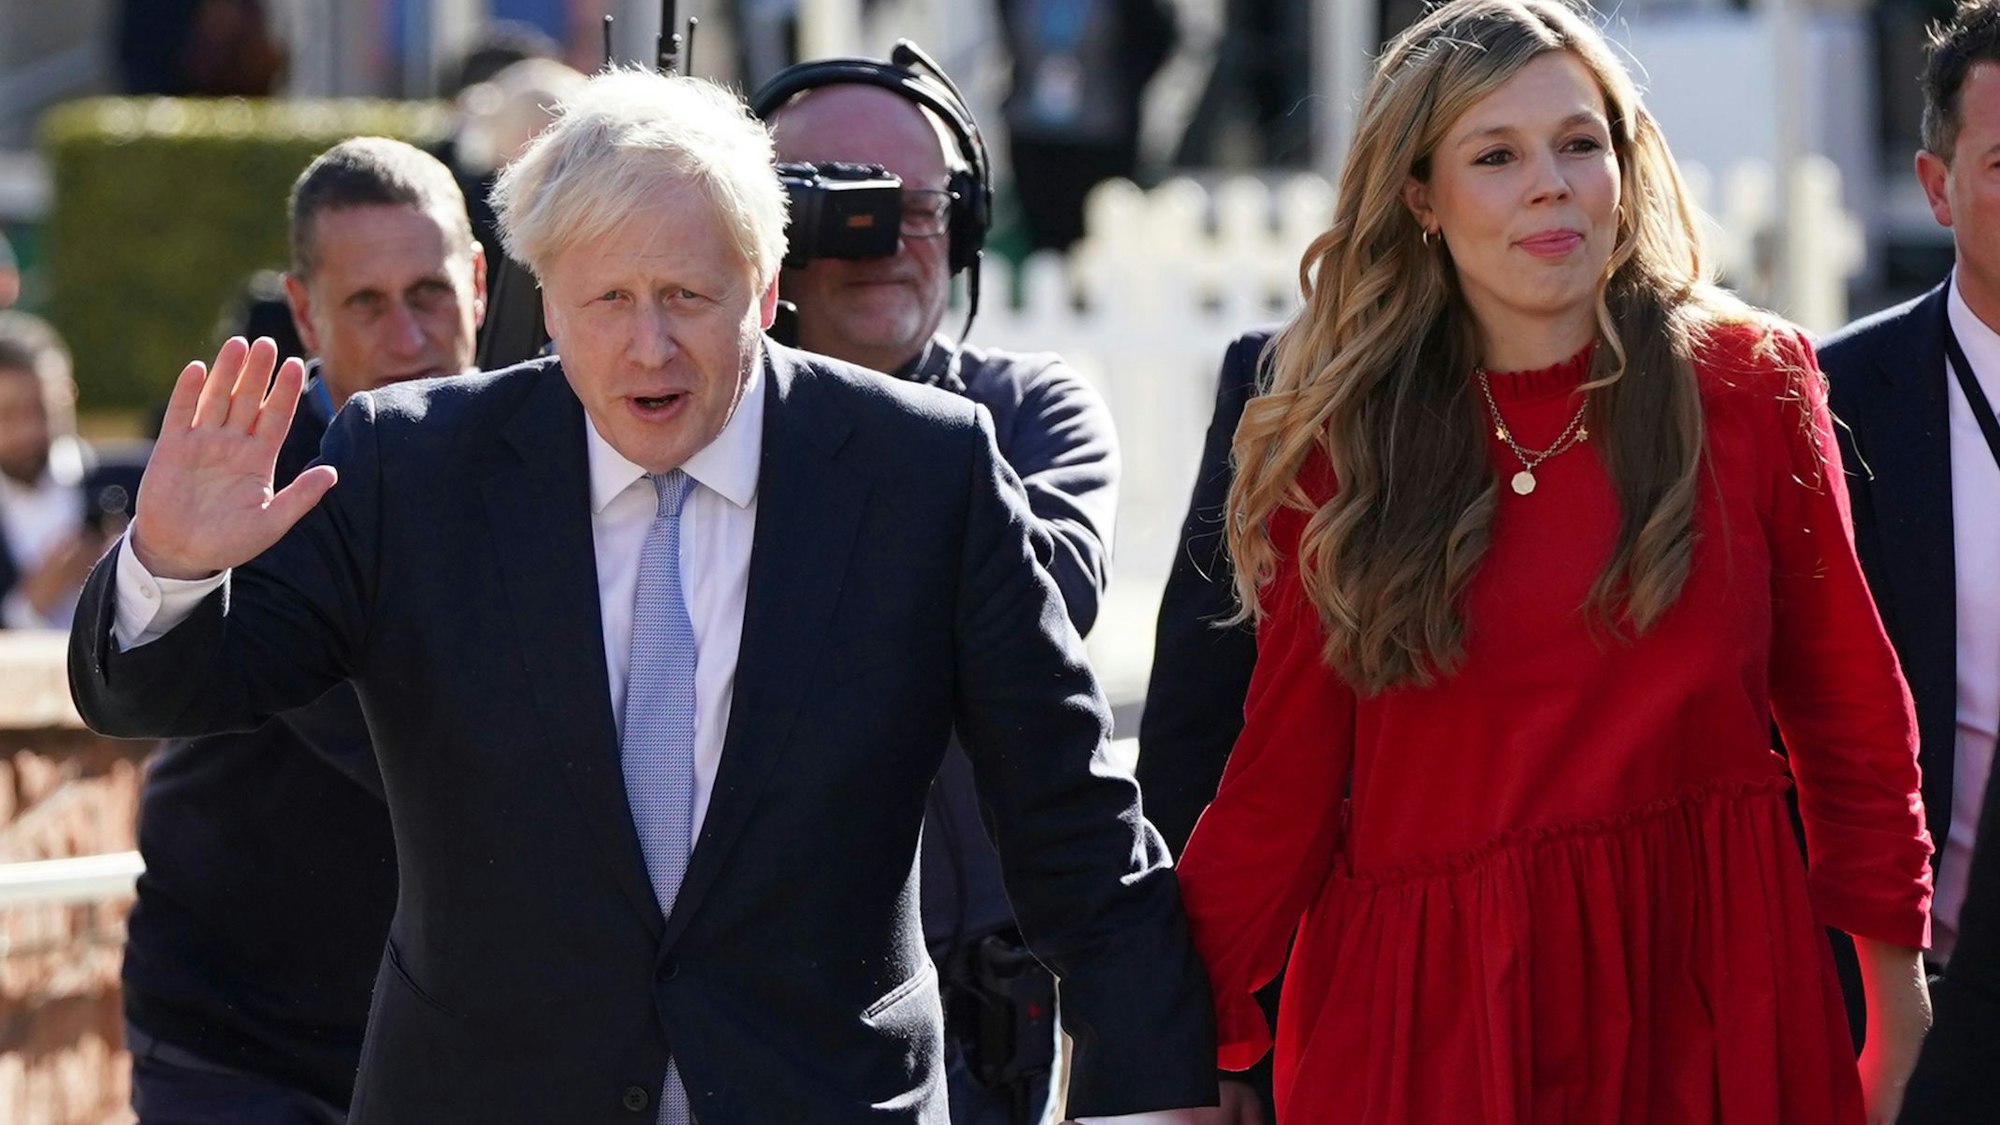 Boris Johnson, der Premierminister von Großbritannien, geht gemeinsam mit seiner Frau Carrie Johnson während des Parteitags der Konservativen zum Kongresszentrum in Manchester.